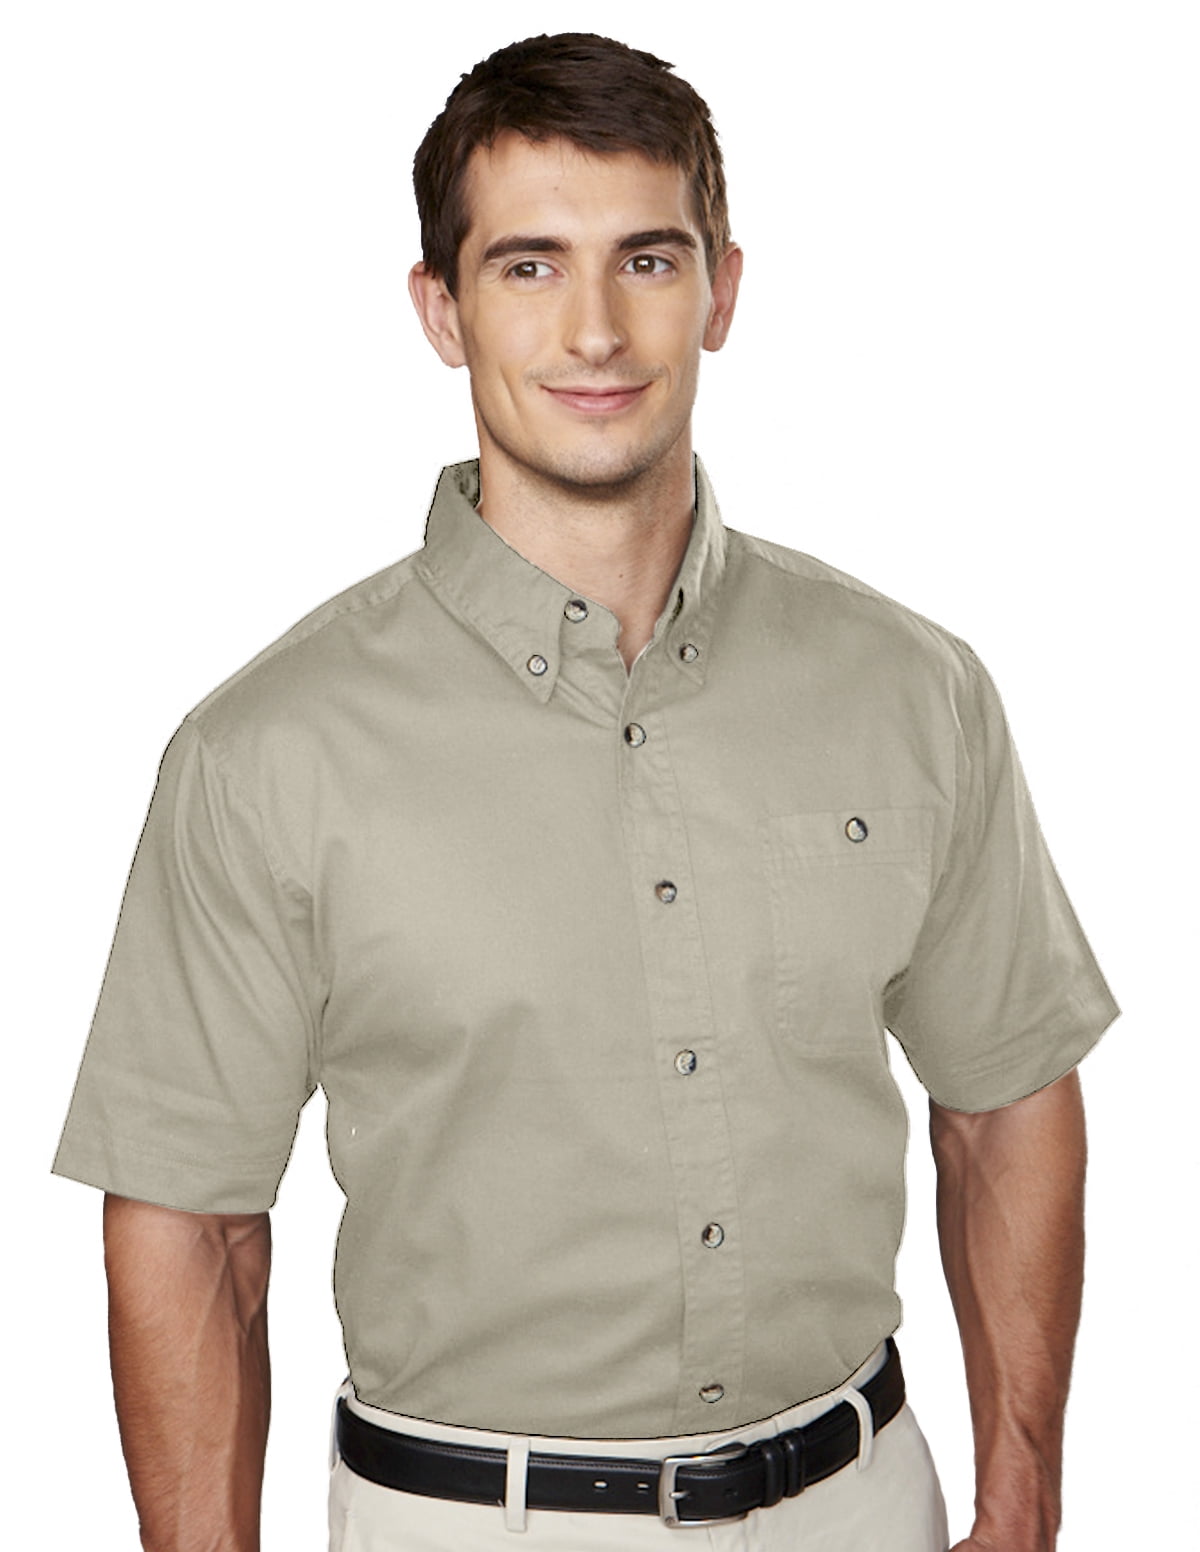 Tri-Mountain - Tri-Mountain Men's Cotton Short Sleeve Twill Shirt ...